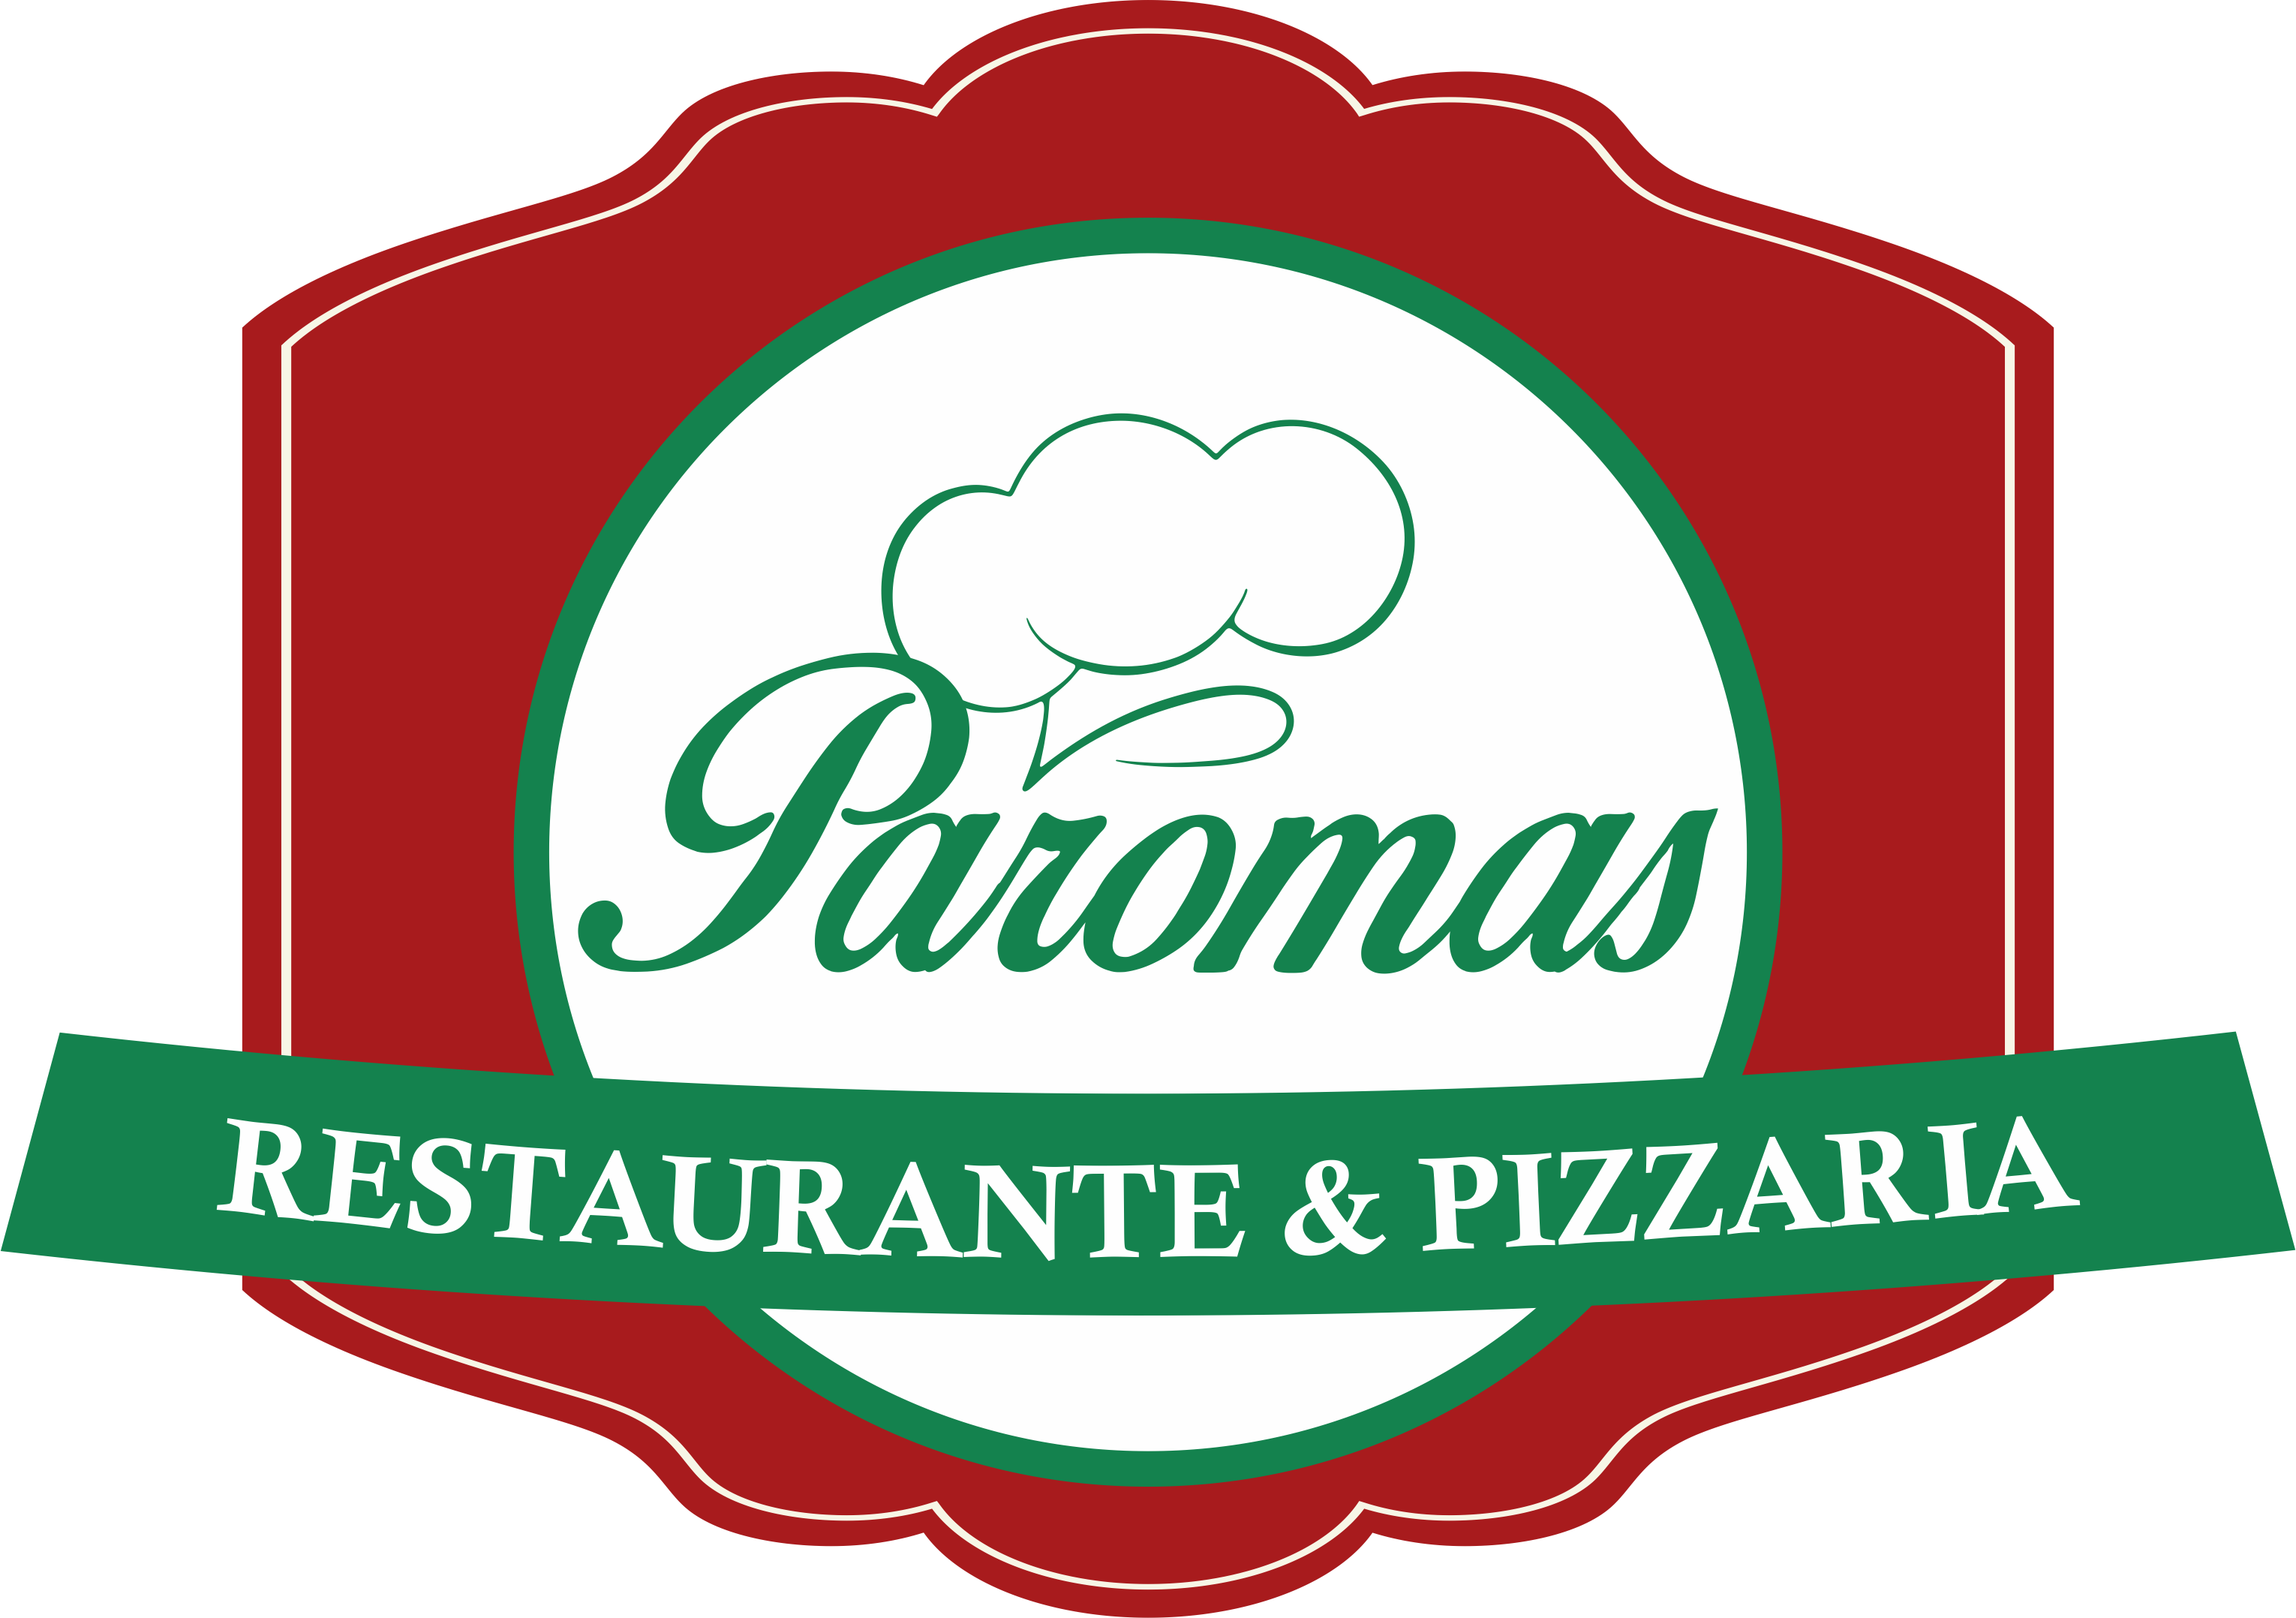 Restaurante e Pizzaria Paromas